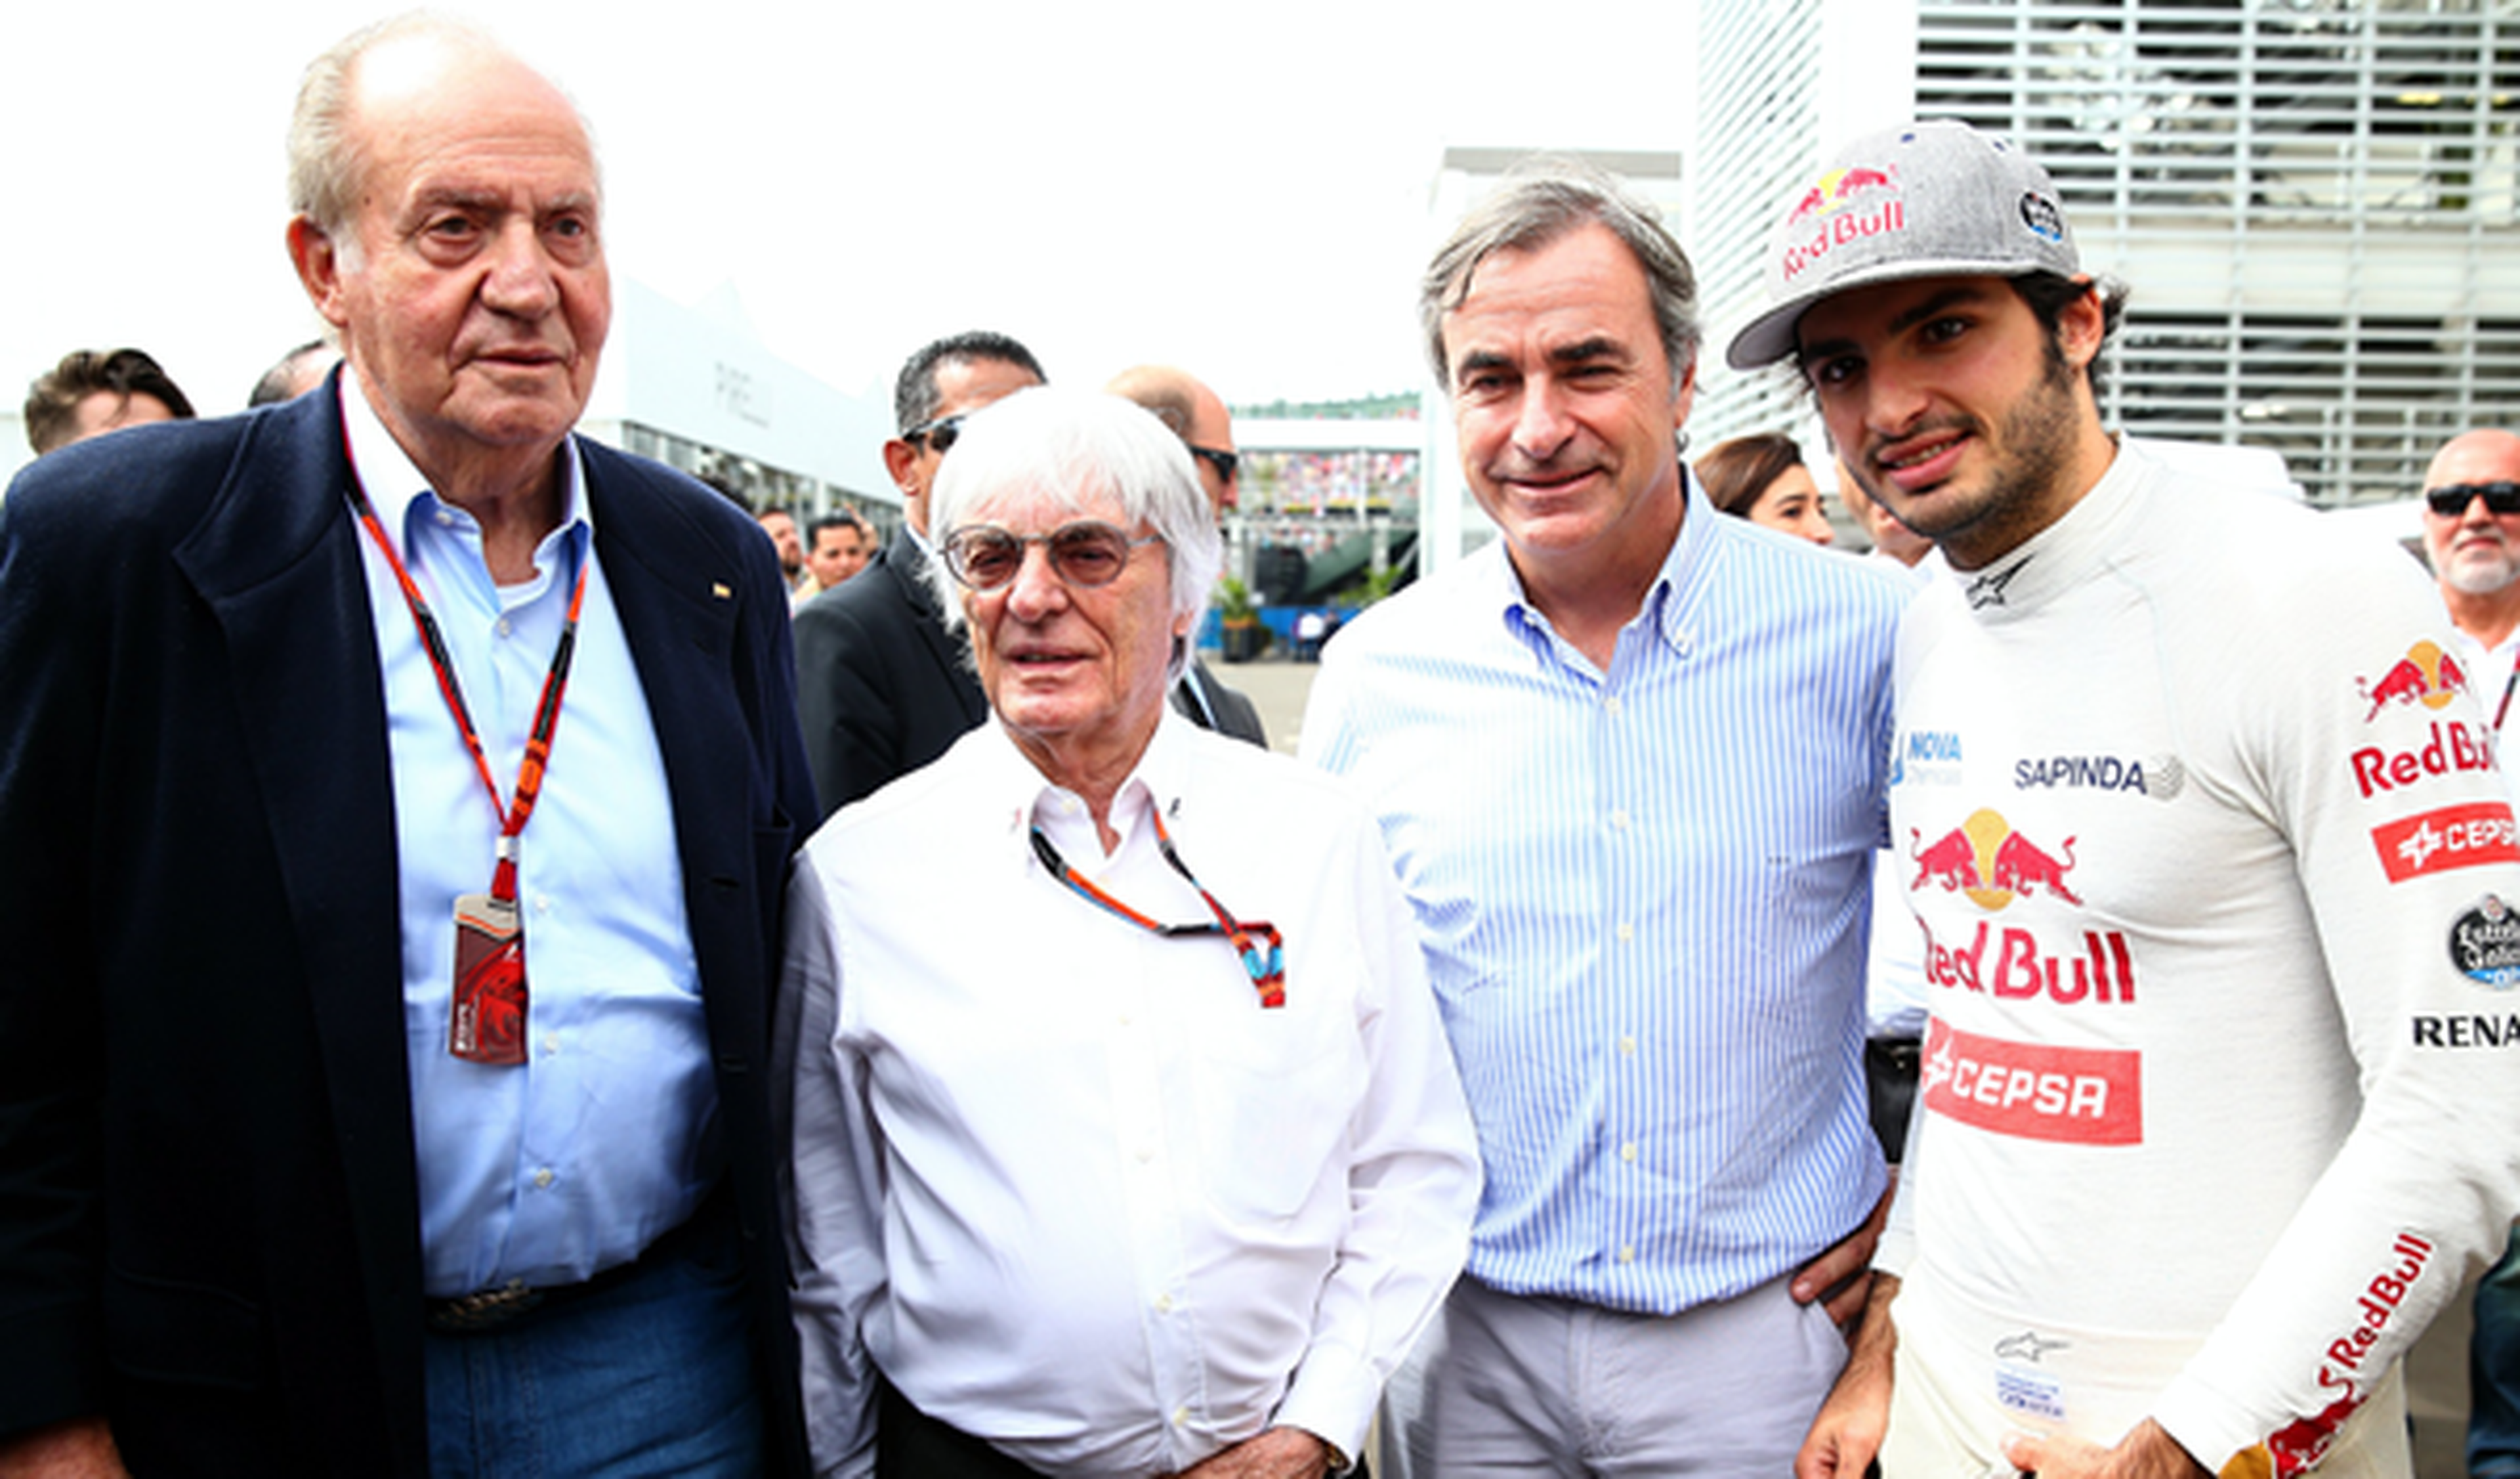 El rey Juan Carlos visita a Alonso y Sainz en el GP México